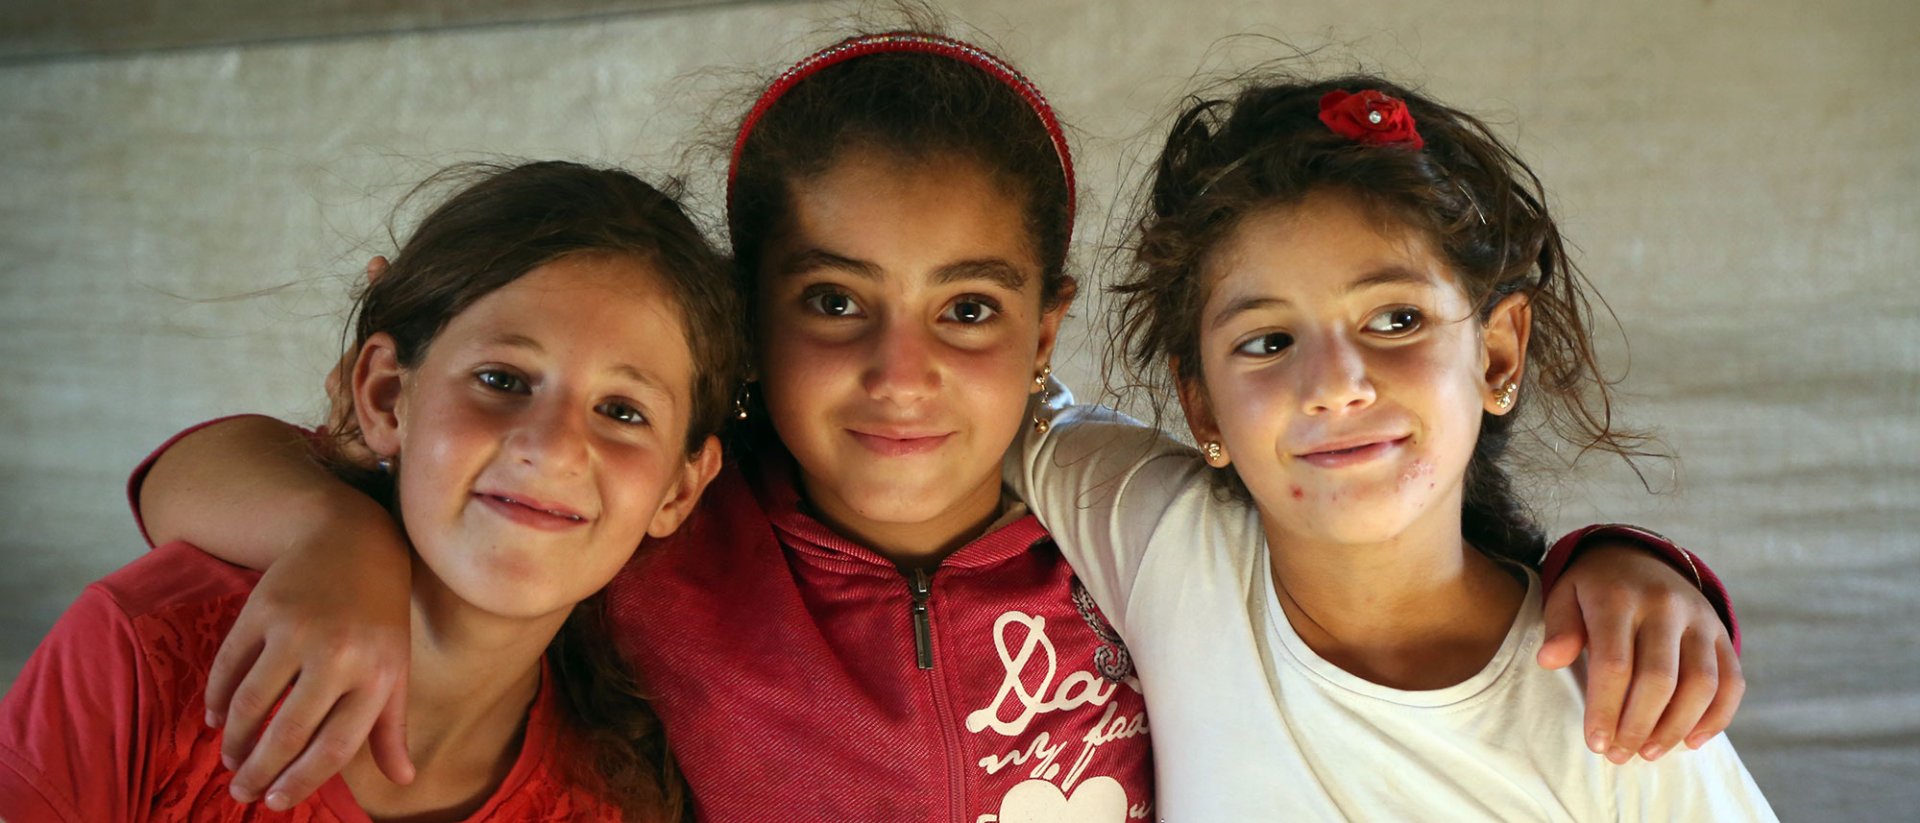 El Día Mundial de las Personas Refugiadas - 3 niñas sirias en un campo de refugiados